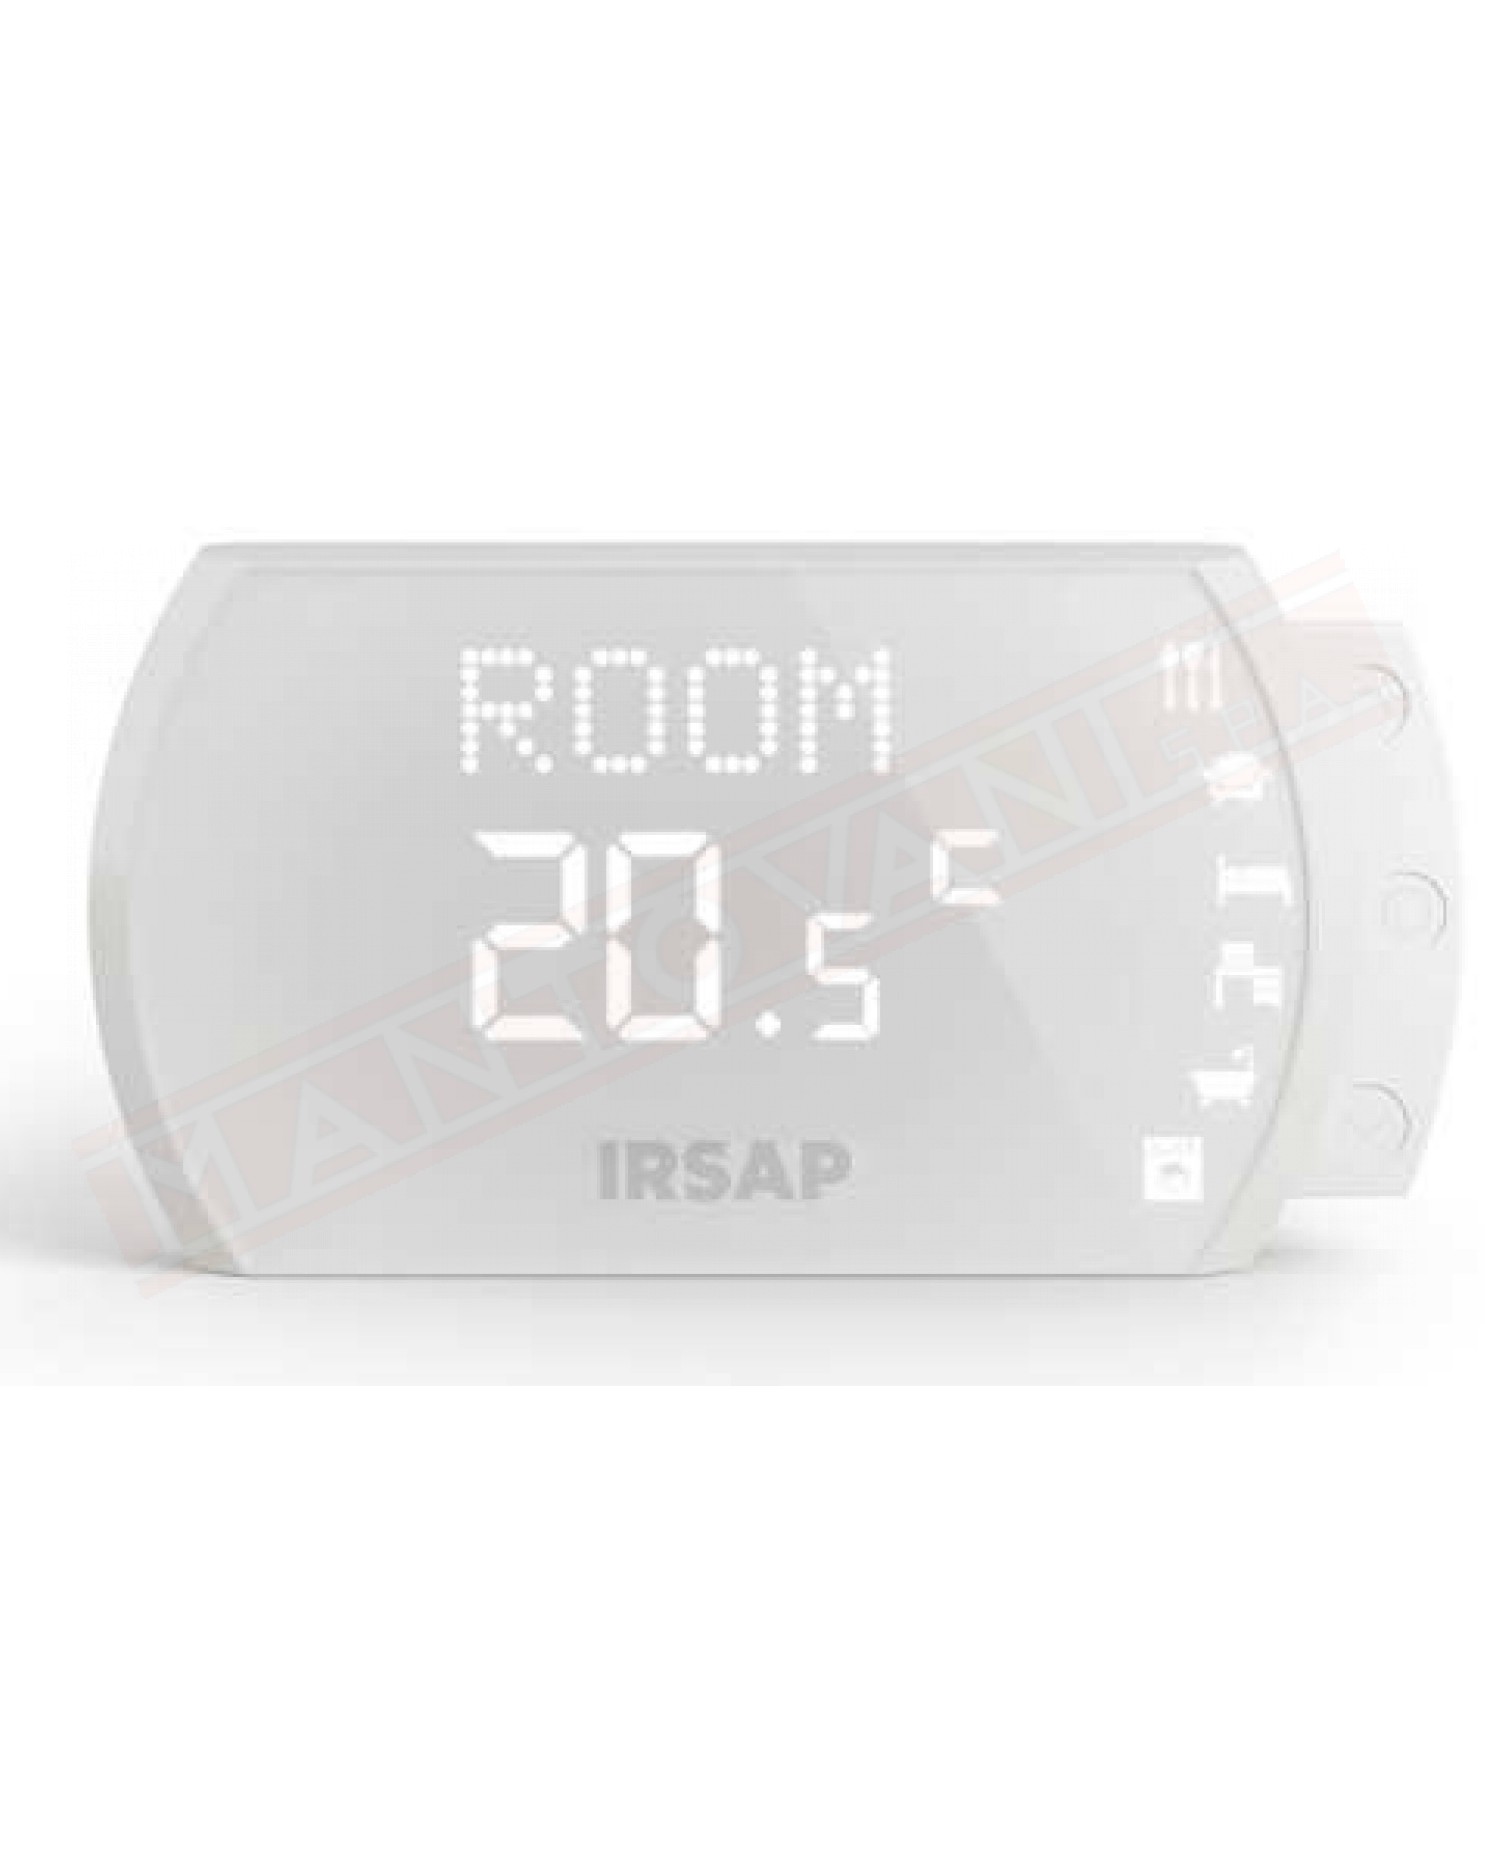 Irsap Now termostato digitale con sensore temperatura umidità e qualità dell aria integrati